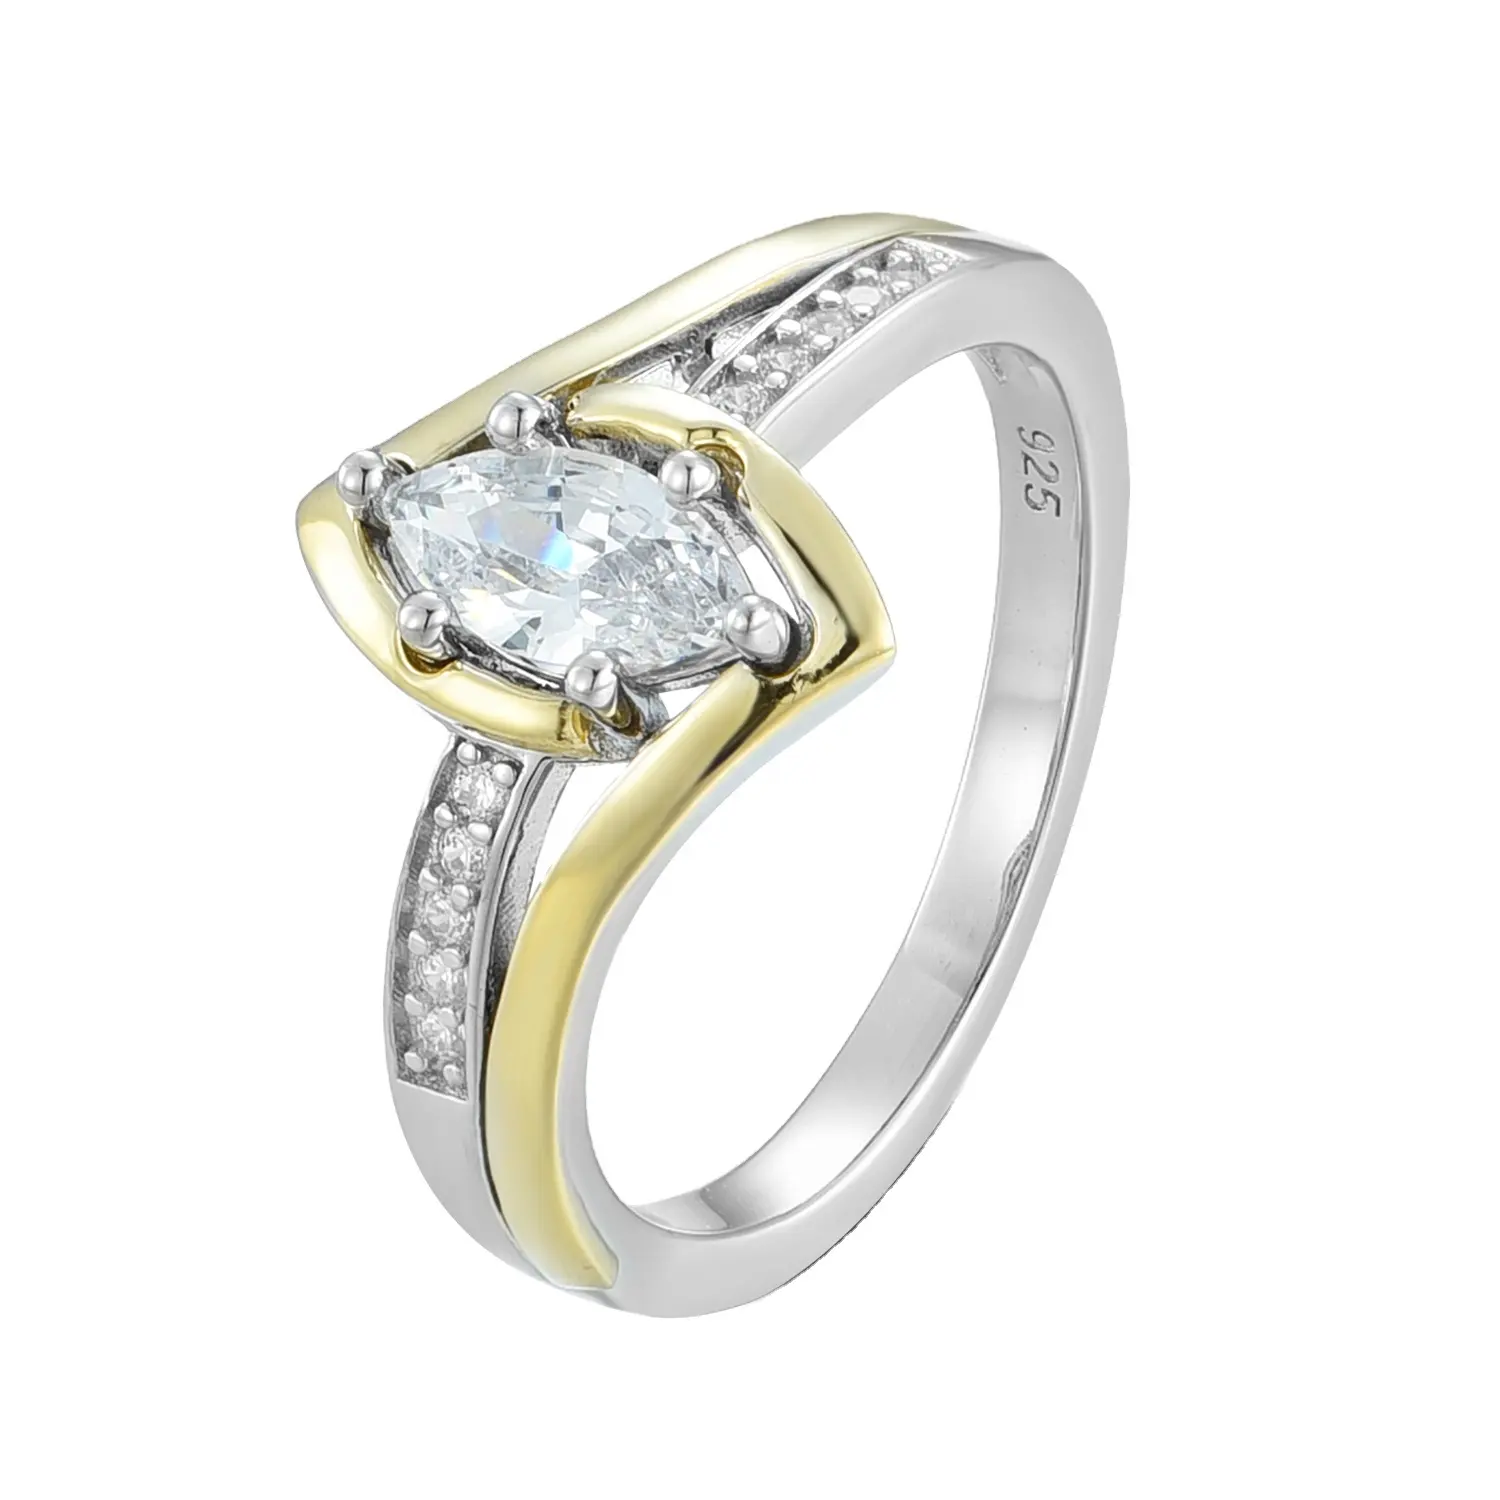 Anillos de compromiso minimalistas de plata 925 para mujer, anillo de oro bicolor de 2 gramos, diseño de anillo de moissanita Marquesa